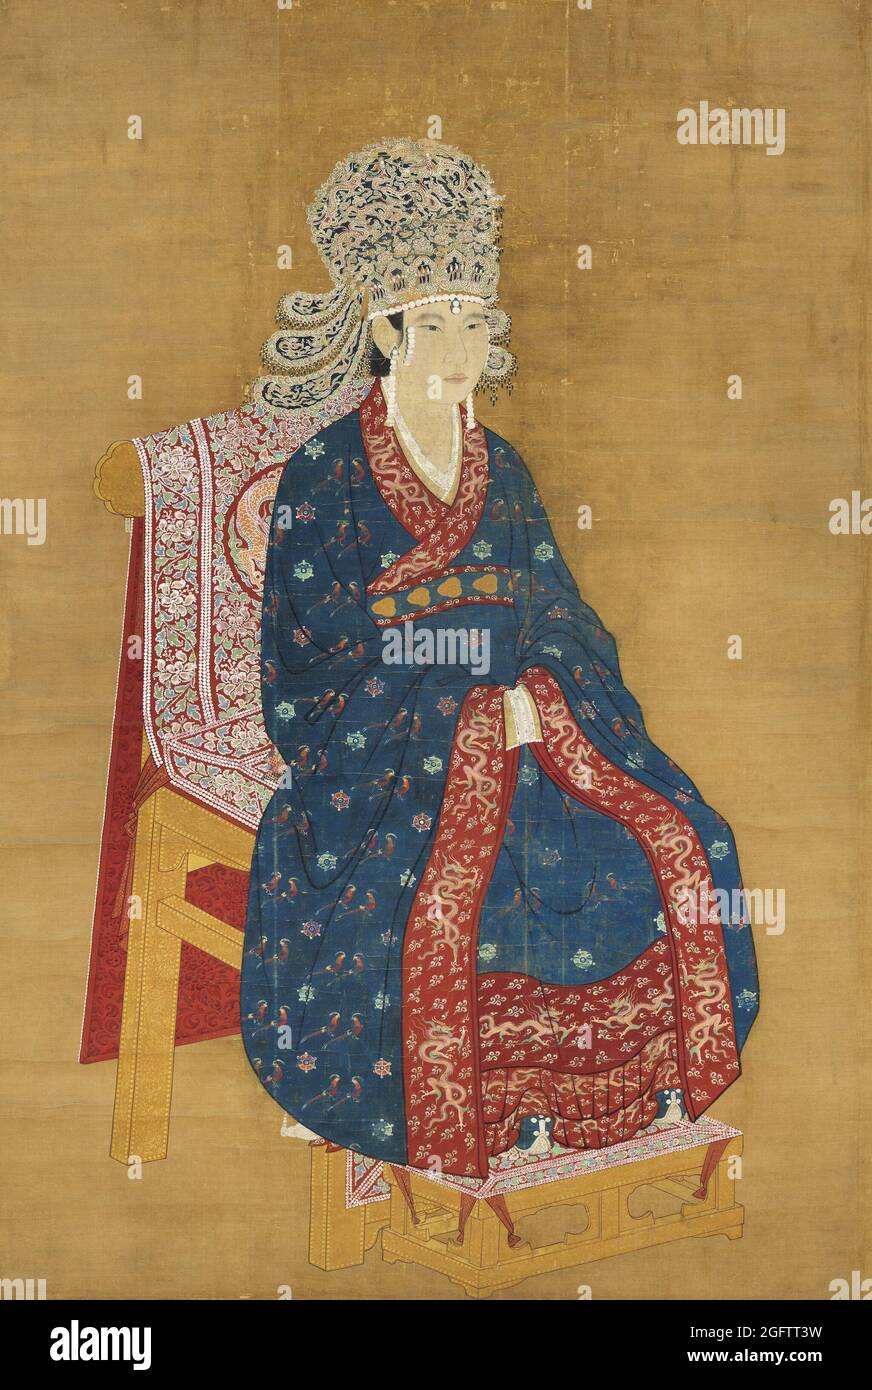 Cina: Imperatrice Xiang (1047-1102), consorte dell'Imperatore Shenzhen, 6° sovrano della Dinastia Song (r.1067-1085). Pittura a scorrimento sospesa, c. 1067-1102. L'imperatrice Xiang, conosciuta anche come Qisheng, era consorte all'imperatrice Shenzhen. Aveva solo un figlio, una figlia, ma era la madre legale dei futuri imperatori Zhezong e Huizong. Divenne imperatrice Dowager quando l'imperatore Zhezong salì al trono. Per un certo periodo agì come reggente e co-governante dell'imperatore Huizong, ed era attiva negli affari del palazzo. Foto Stock